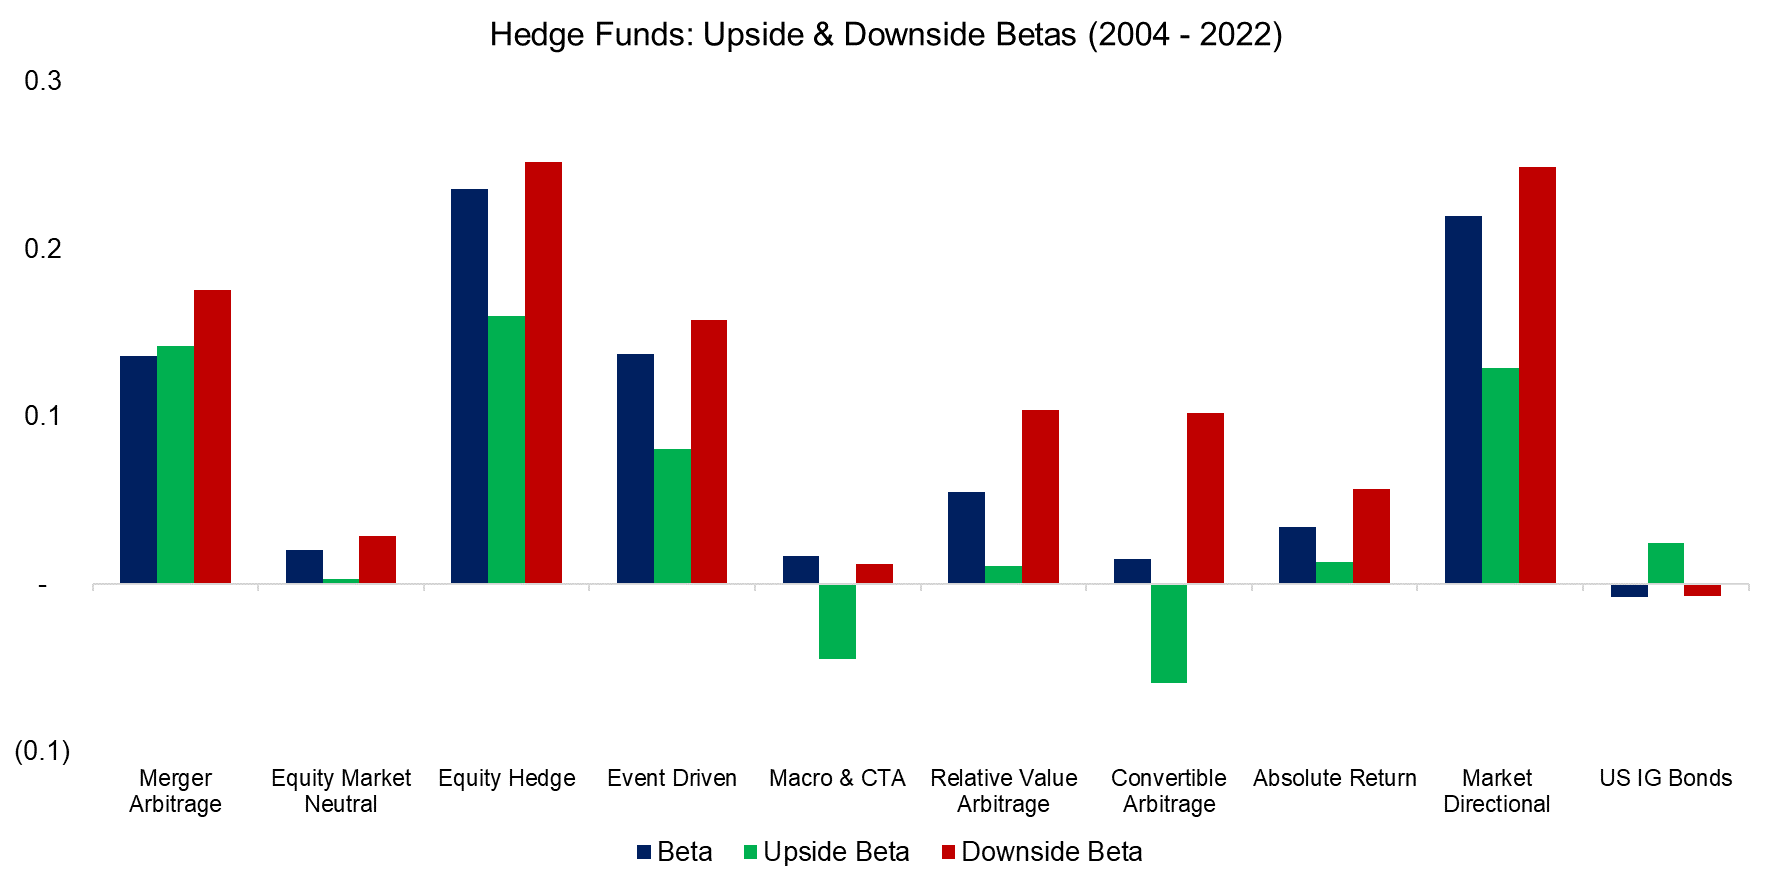 Hedge Funds Upside & Downside Betas (2004 - 2022)